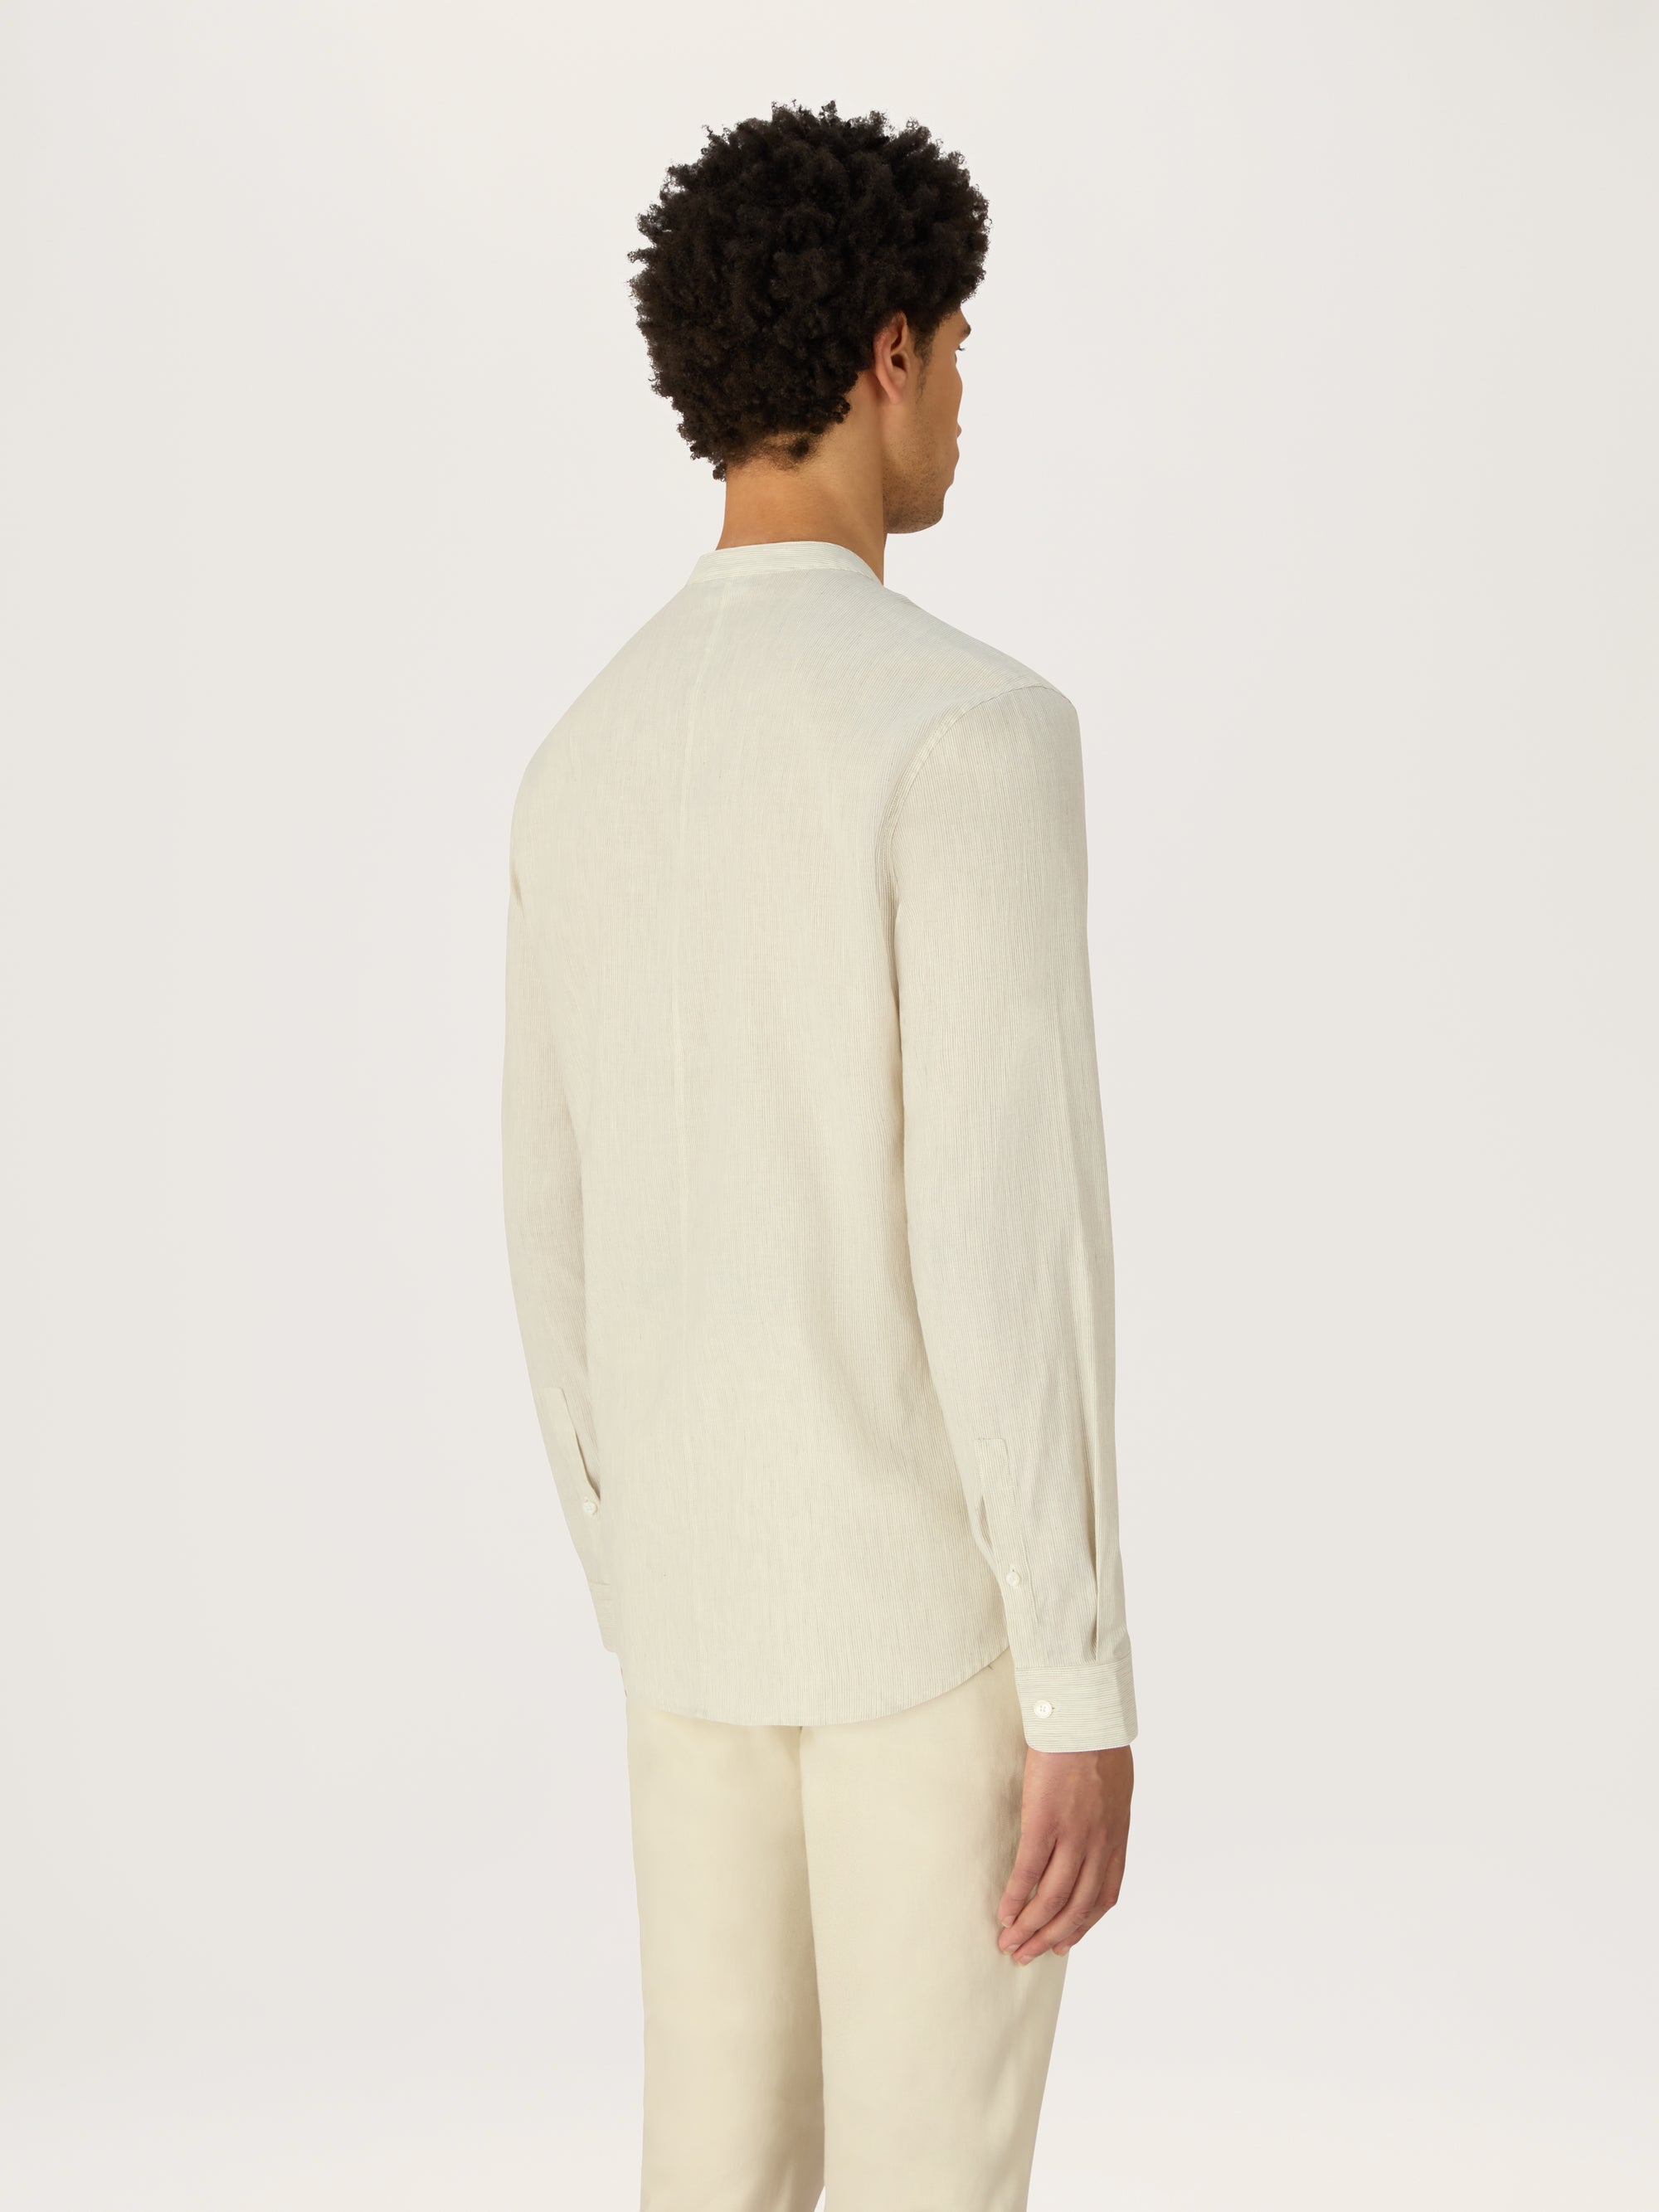 The All Day Shirt Linen Collarless || Stripe | Linen